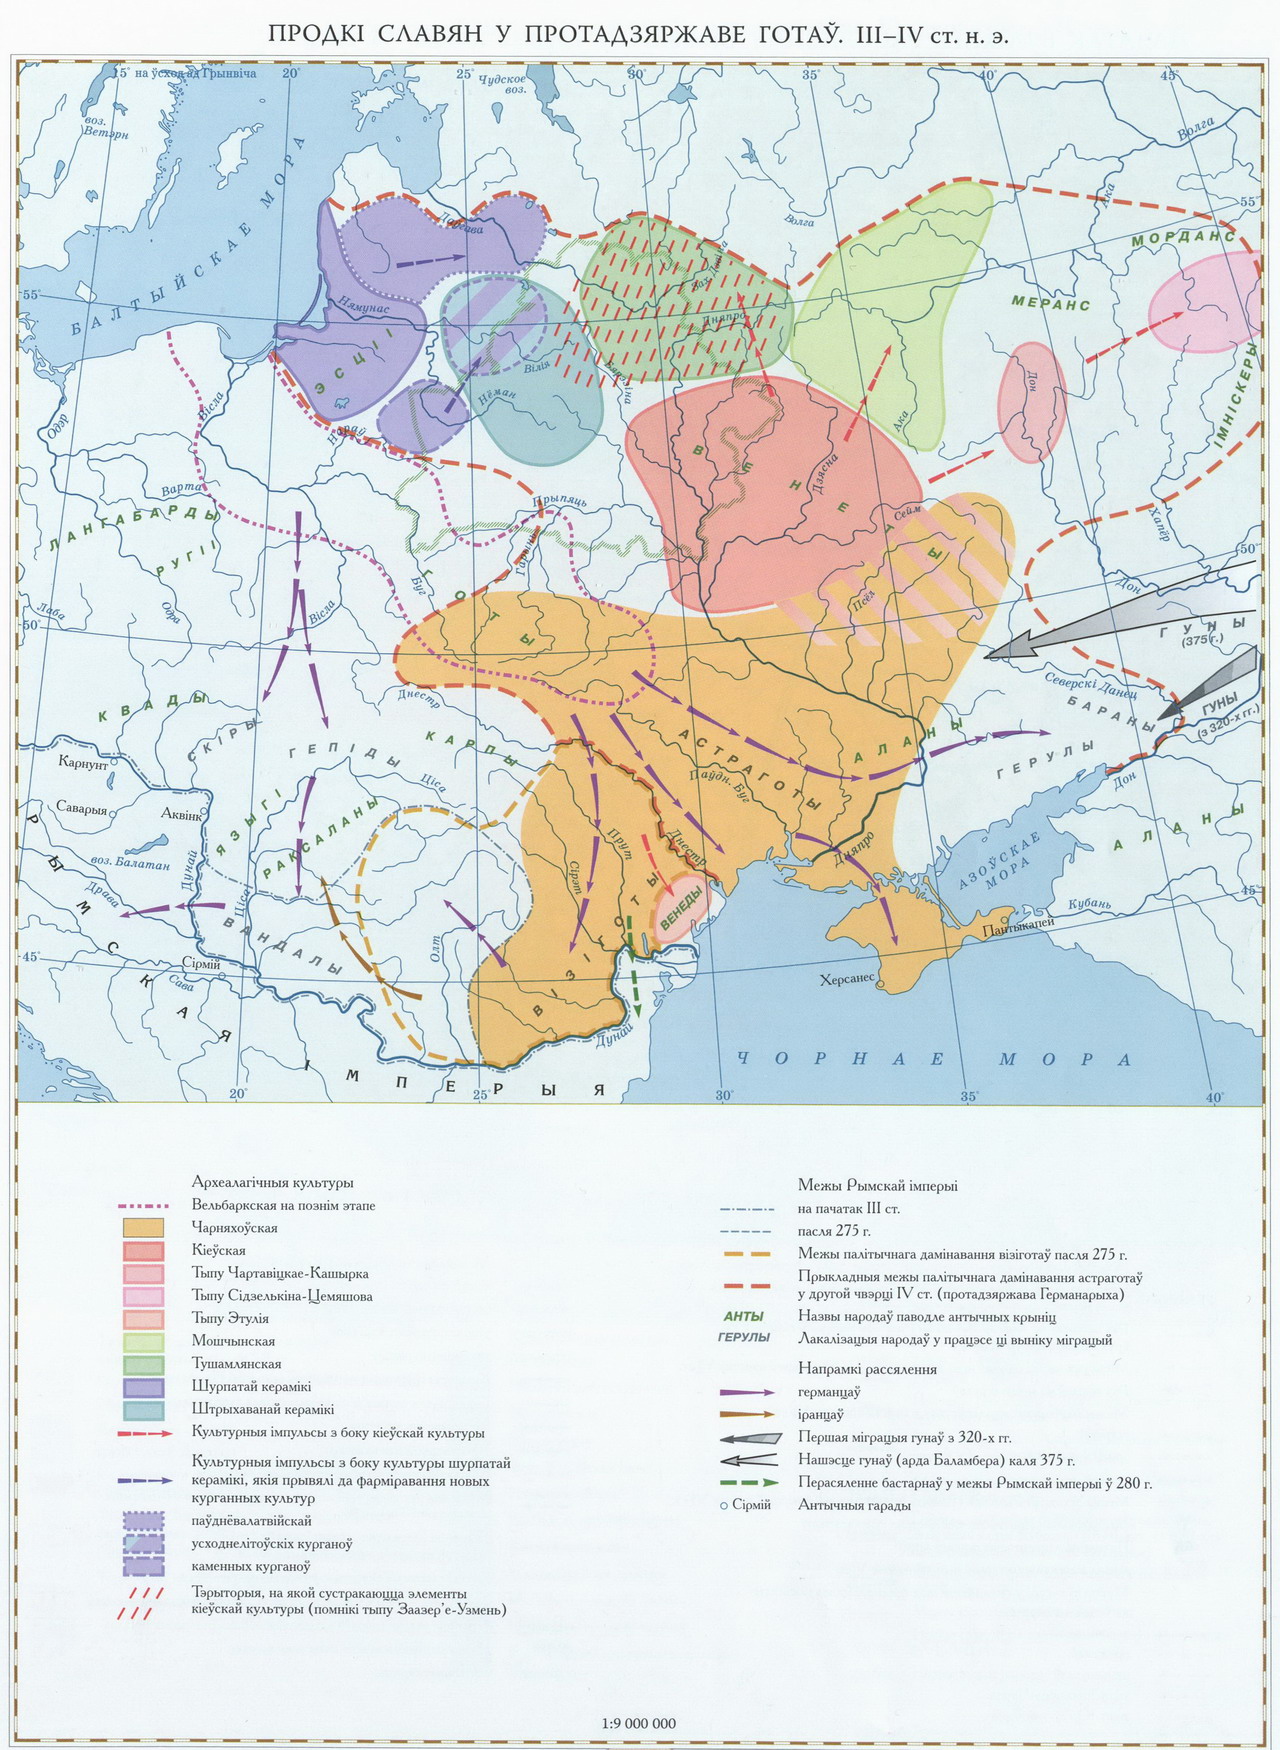 Археологические культуры времени Готского царства по В. Носевичу (розовым отмечены некоторые выходцы из зарубинско-киевского ареала)